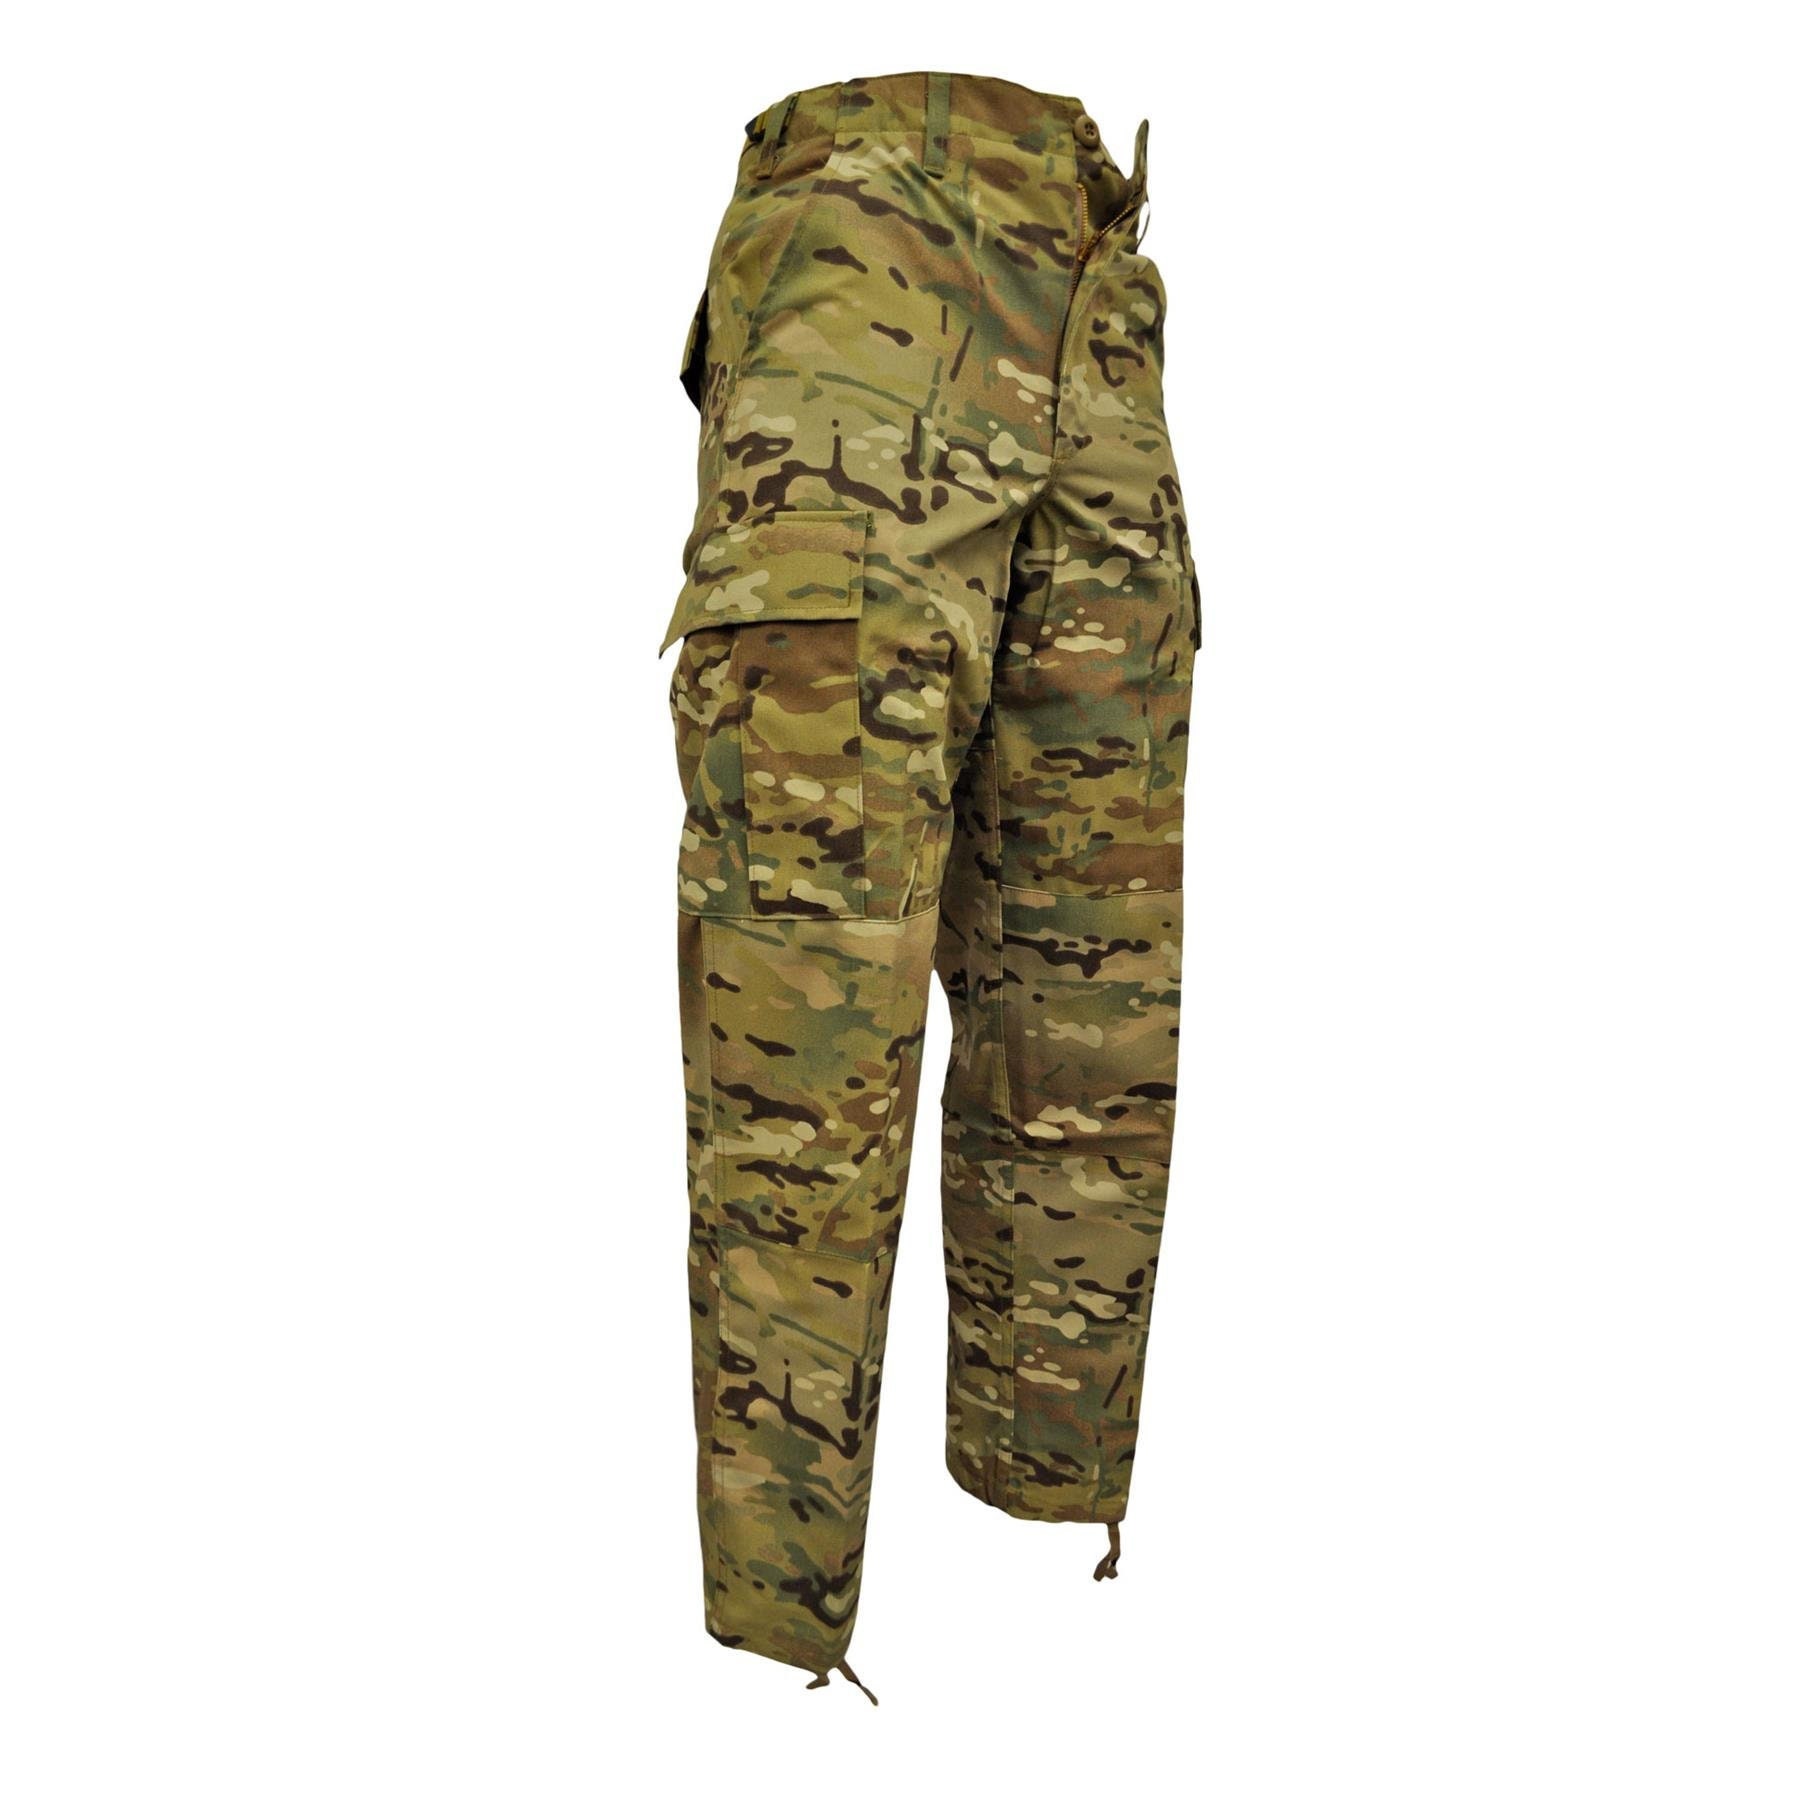 Echarpe Tour de Cou militaire WOODLAND camouflage armée Rothco france